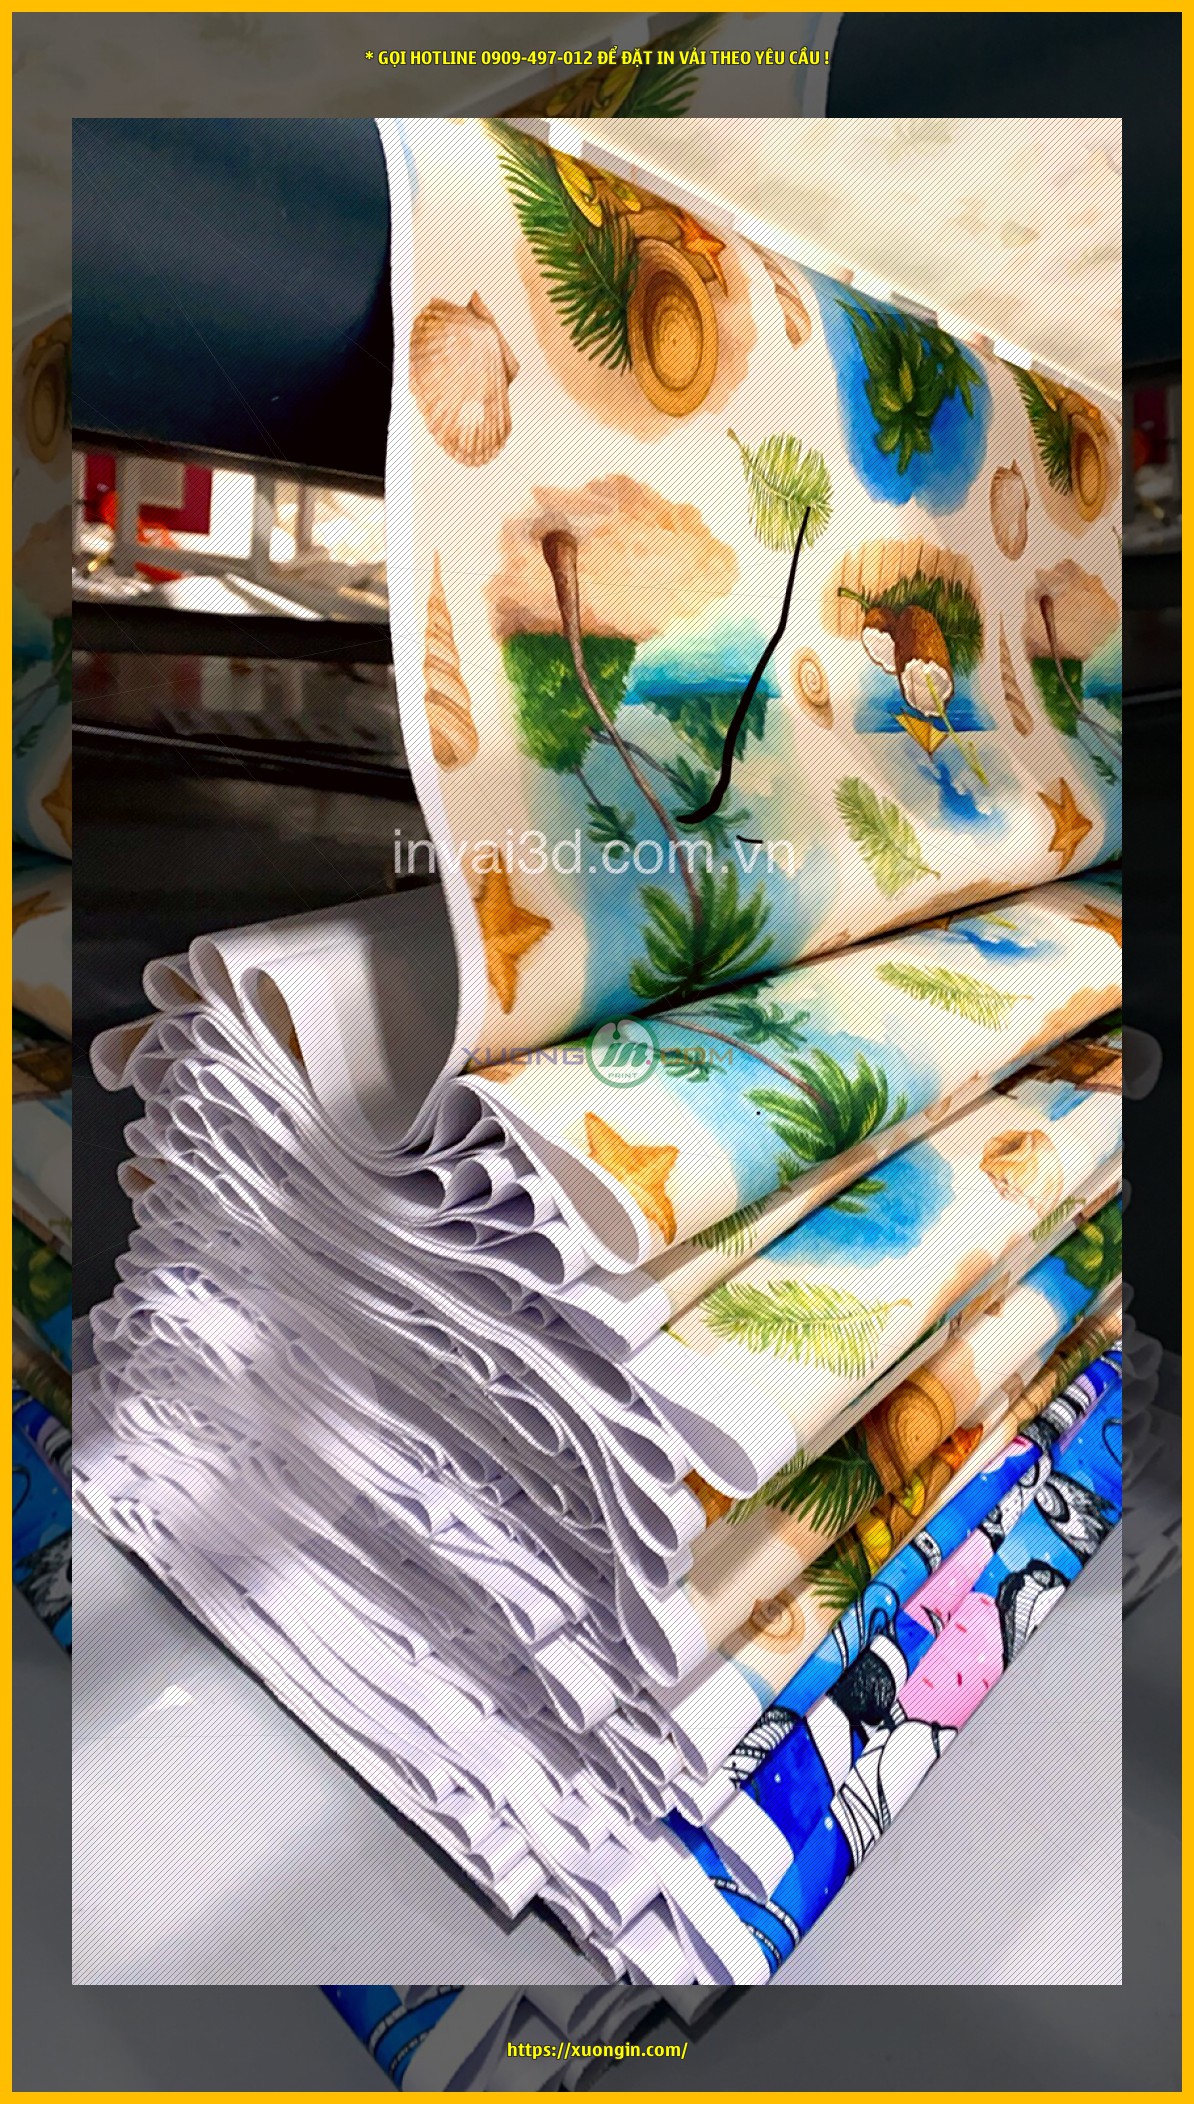 Xưởng in Ngọn Hải Đăng nhận in vải theo yêu cầu tại địa chỉ 26/4A2 Nguyễn Văn Quá, Quận 12, TpHCM. Đây là địa chỉ uy tín của nhiều khách hàng khi đặt in ấn trên vải theo yêu cầu.